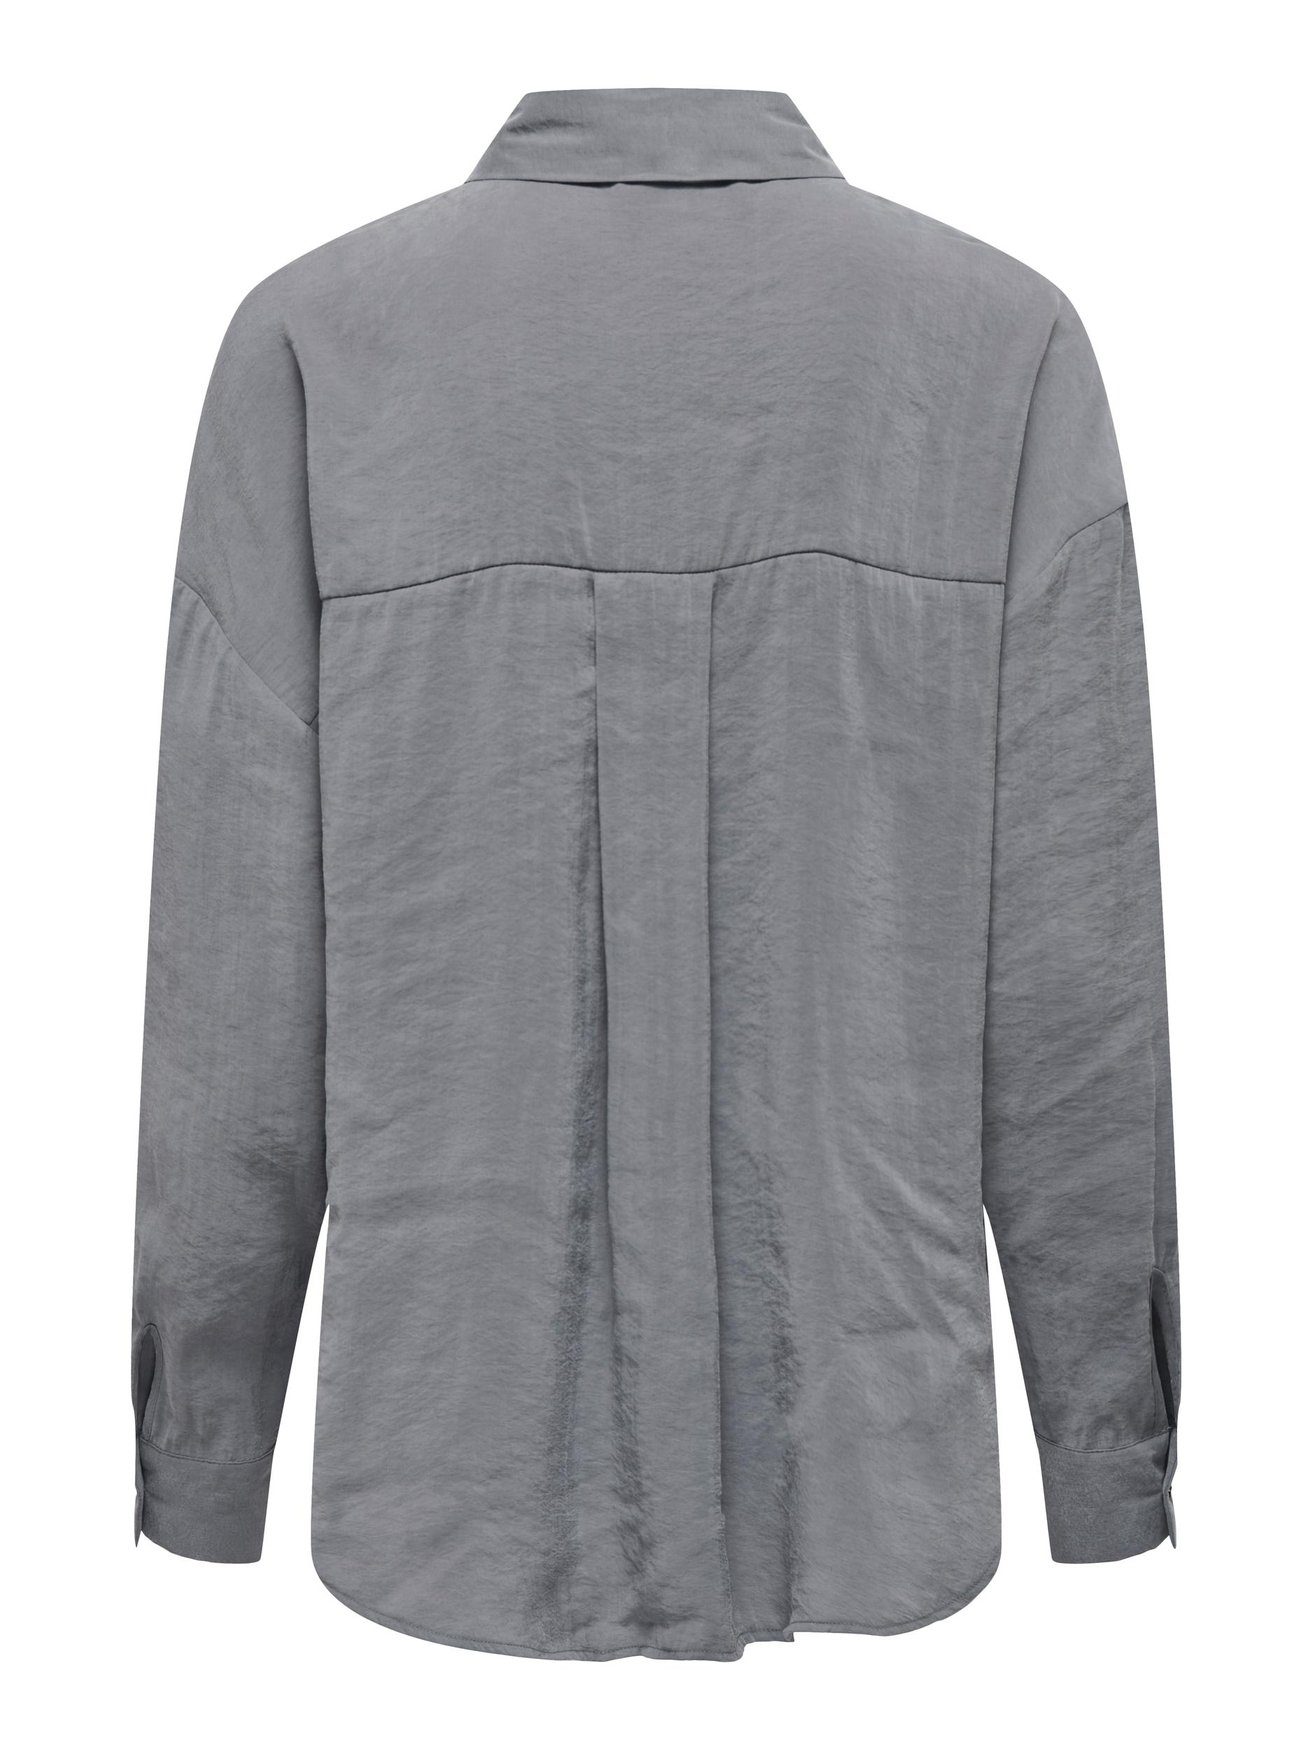 ONLY Blusenshirt Langarm ONLIRIS in Grau Weites Hemd Bluse Oversize 5635 Shirt